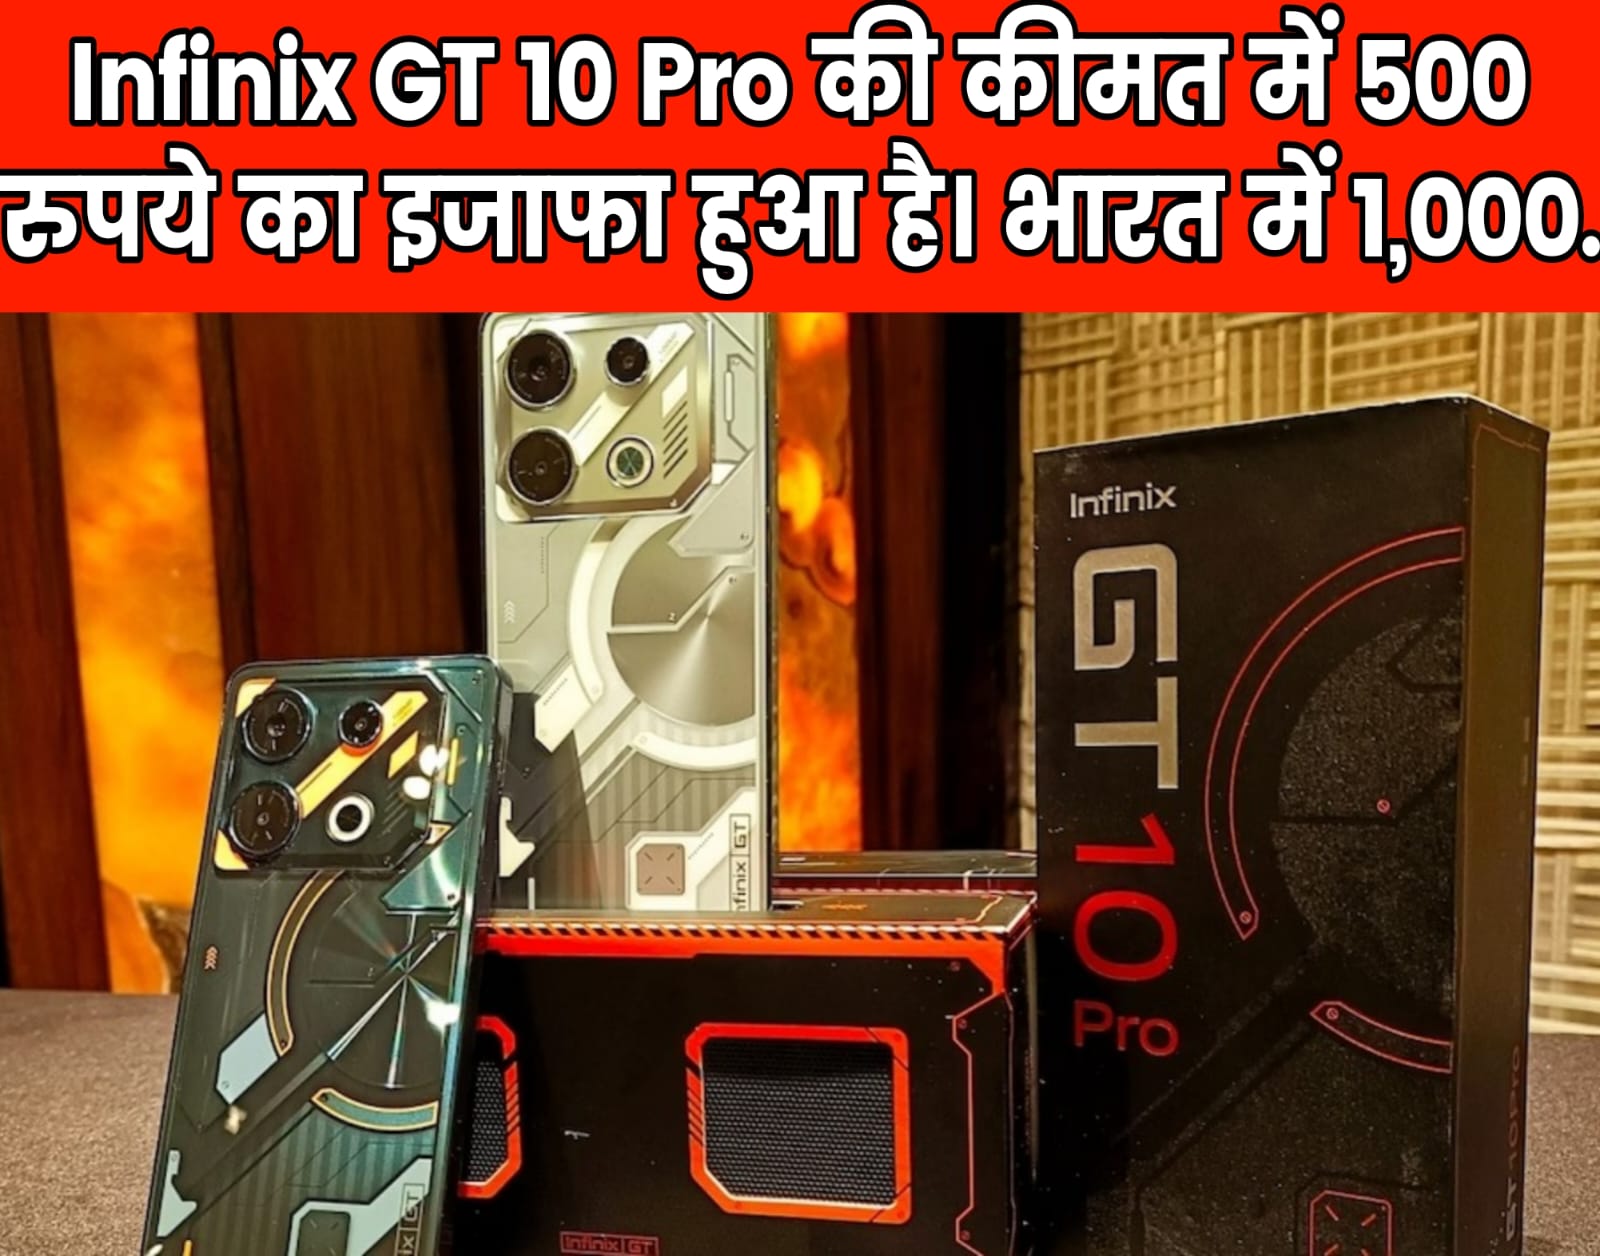 Infinix GT 10 Pro की कीमत में 500 रुपये का इजाफा हुआ है। भारत में 1,000.